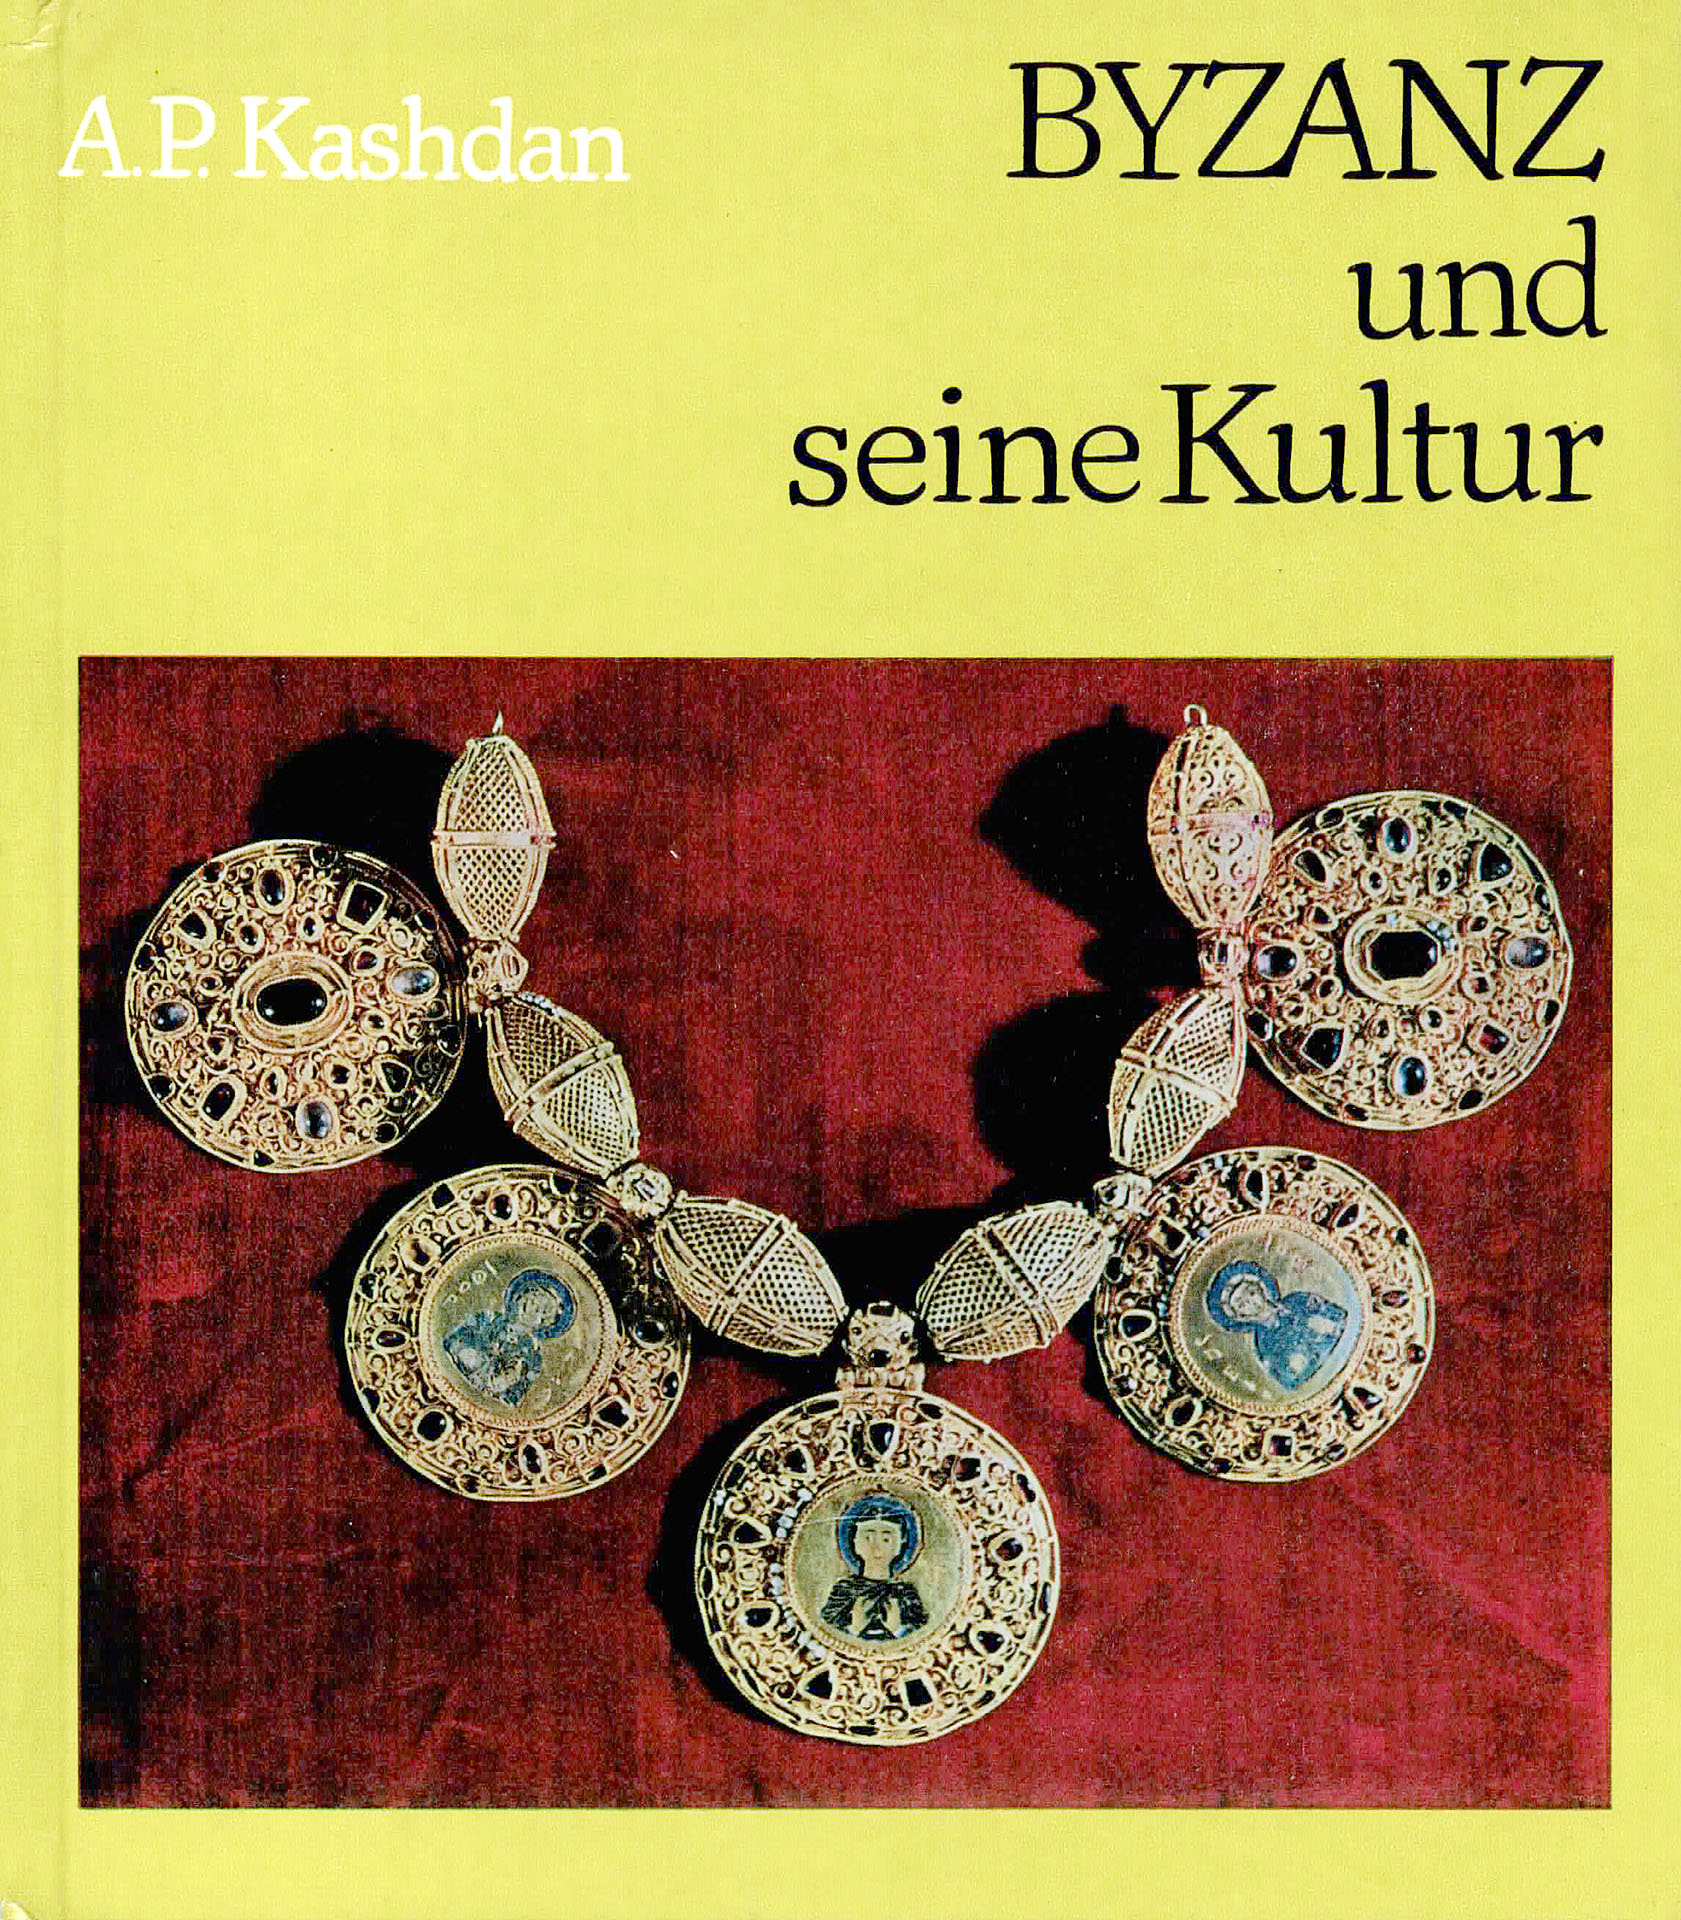 Byzanz und seine Kultur - Kashdan, A. P.